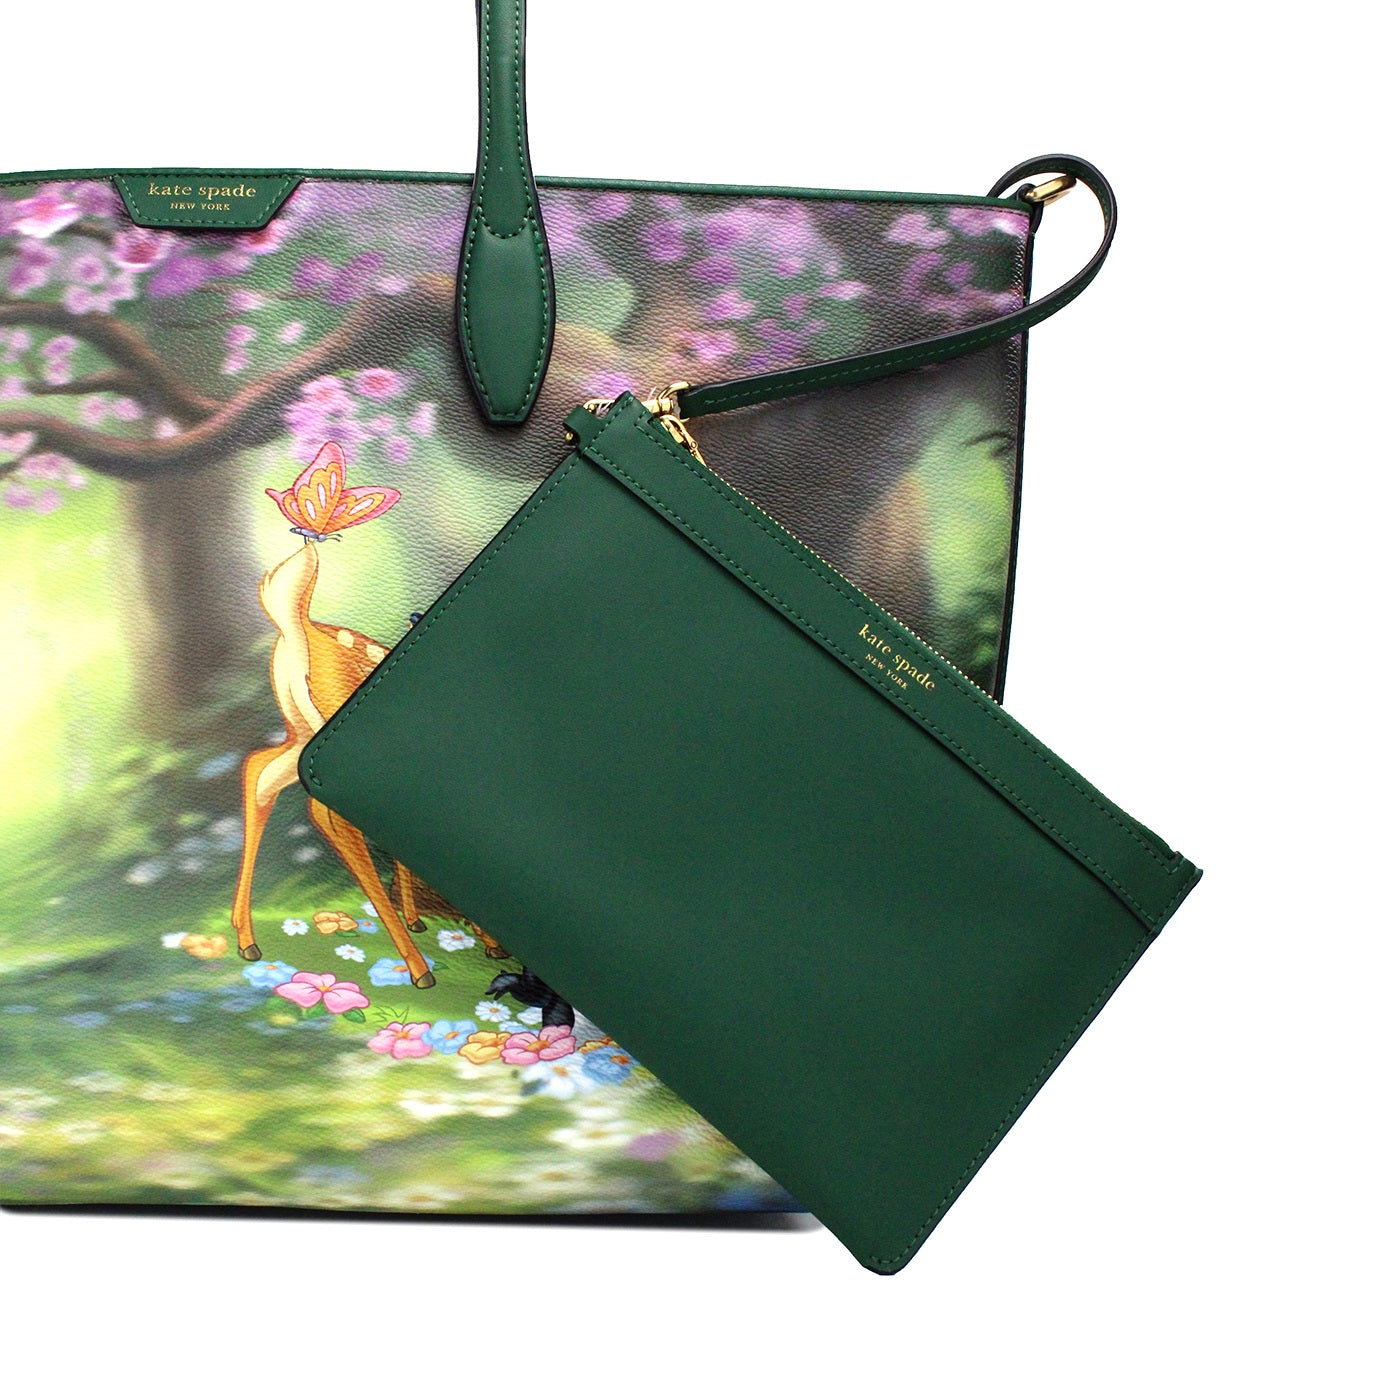 Fashionsarah.com Fashionsarah.com Kate Spade Disney Sutton Bambi Coated Canvas Shoulder Tote Handbag Purse